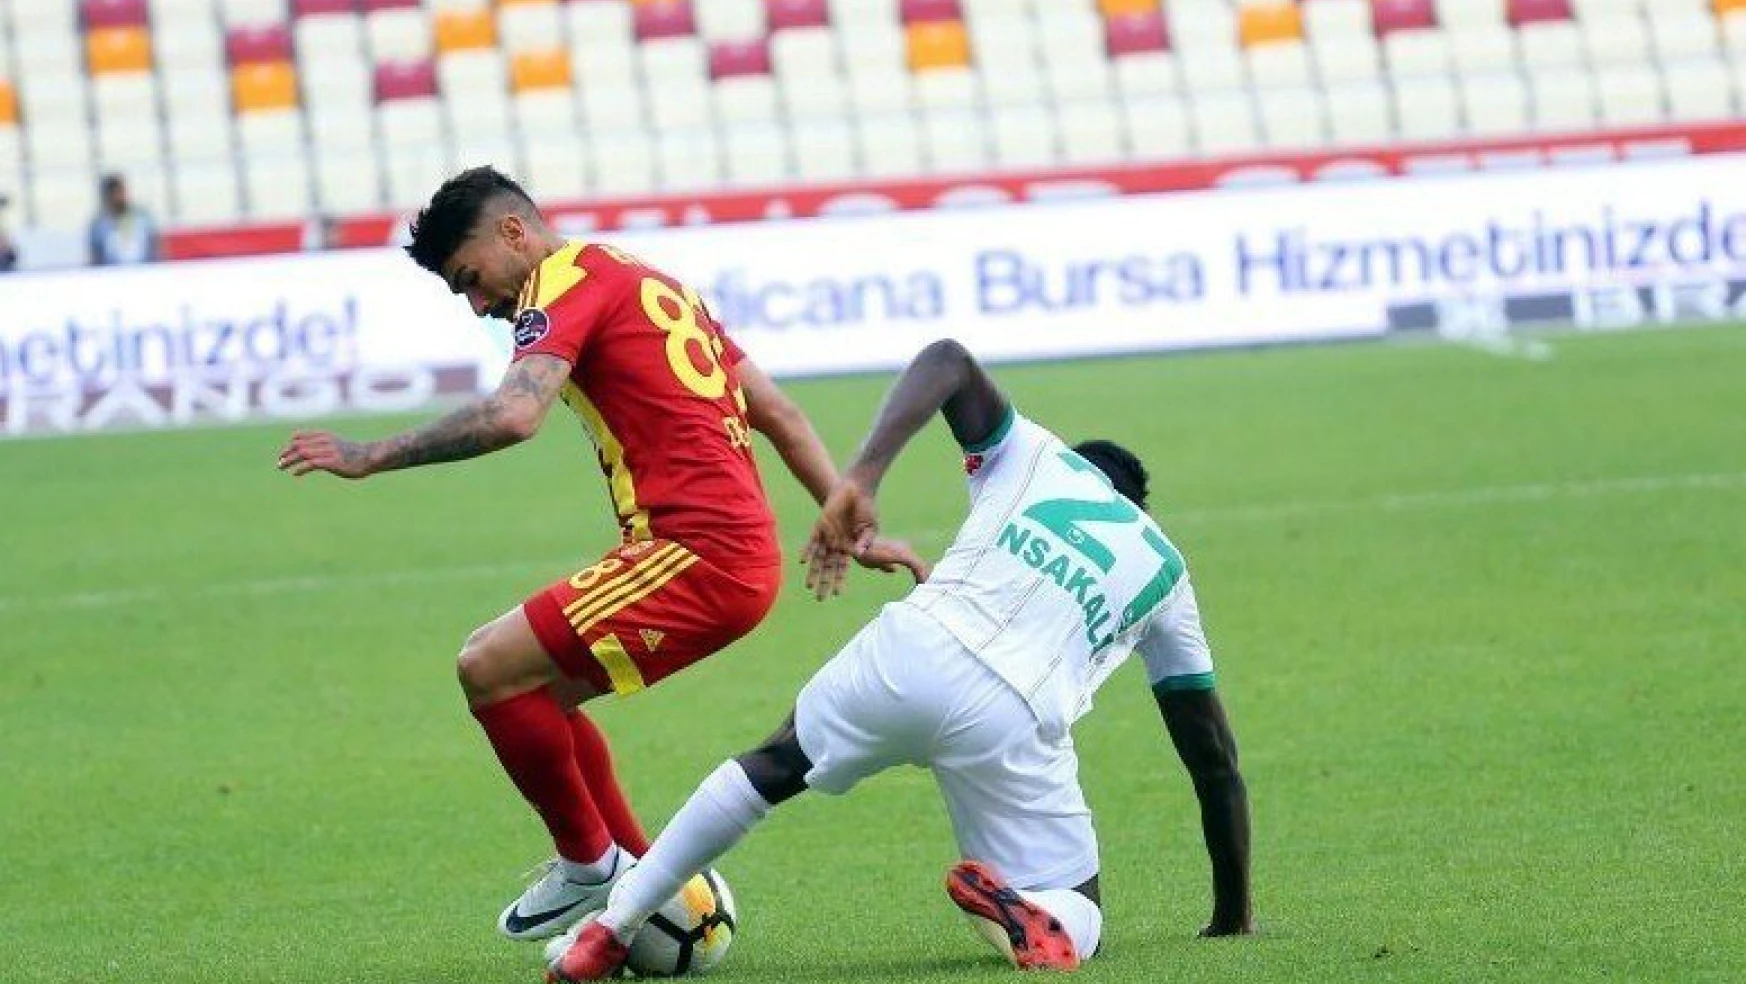 Spor Toto Süper Lig: Evkur Yeni Malatyaspor: 1 - Aytemiz Alanyaspor: 1 (Maç sonucu)
